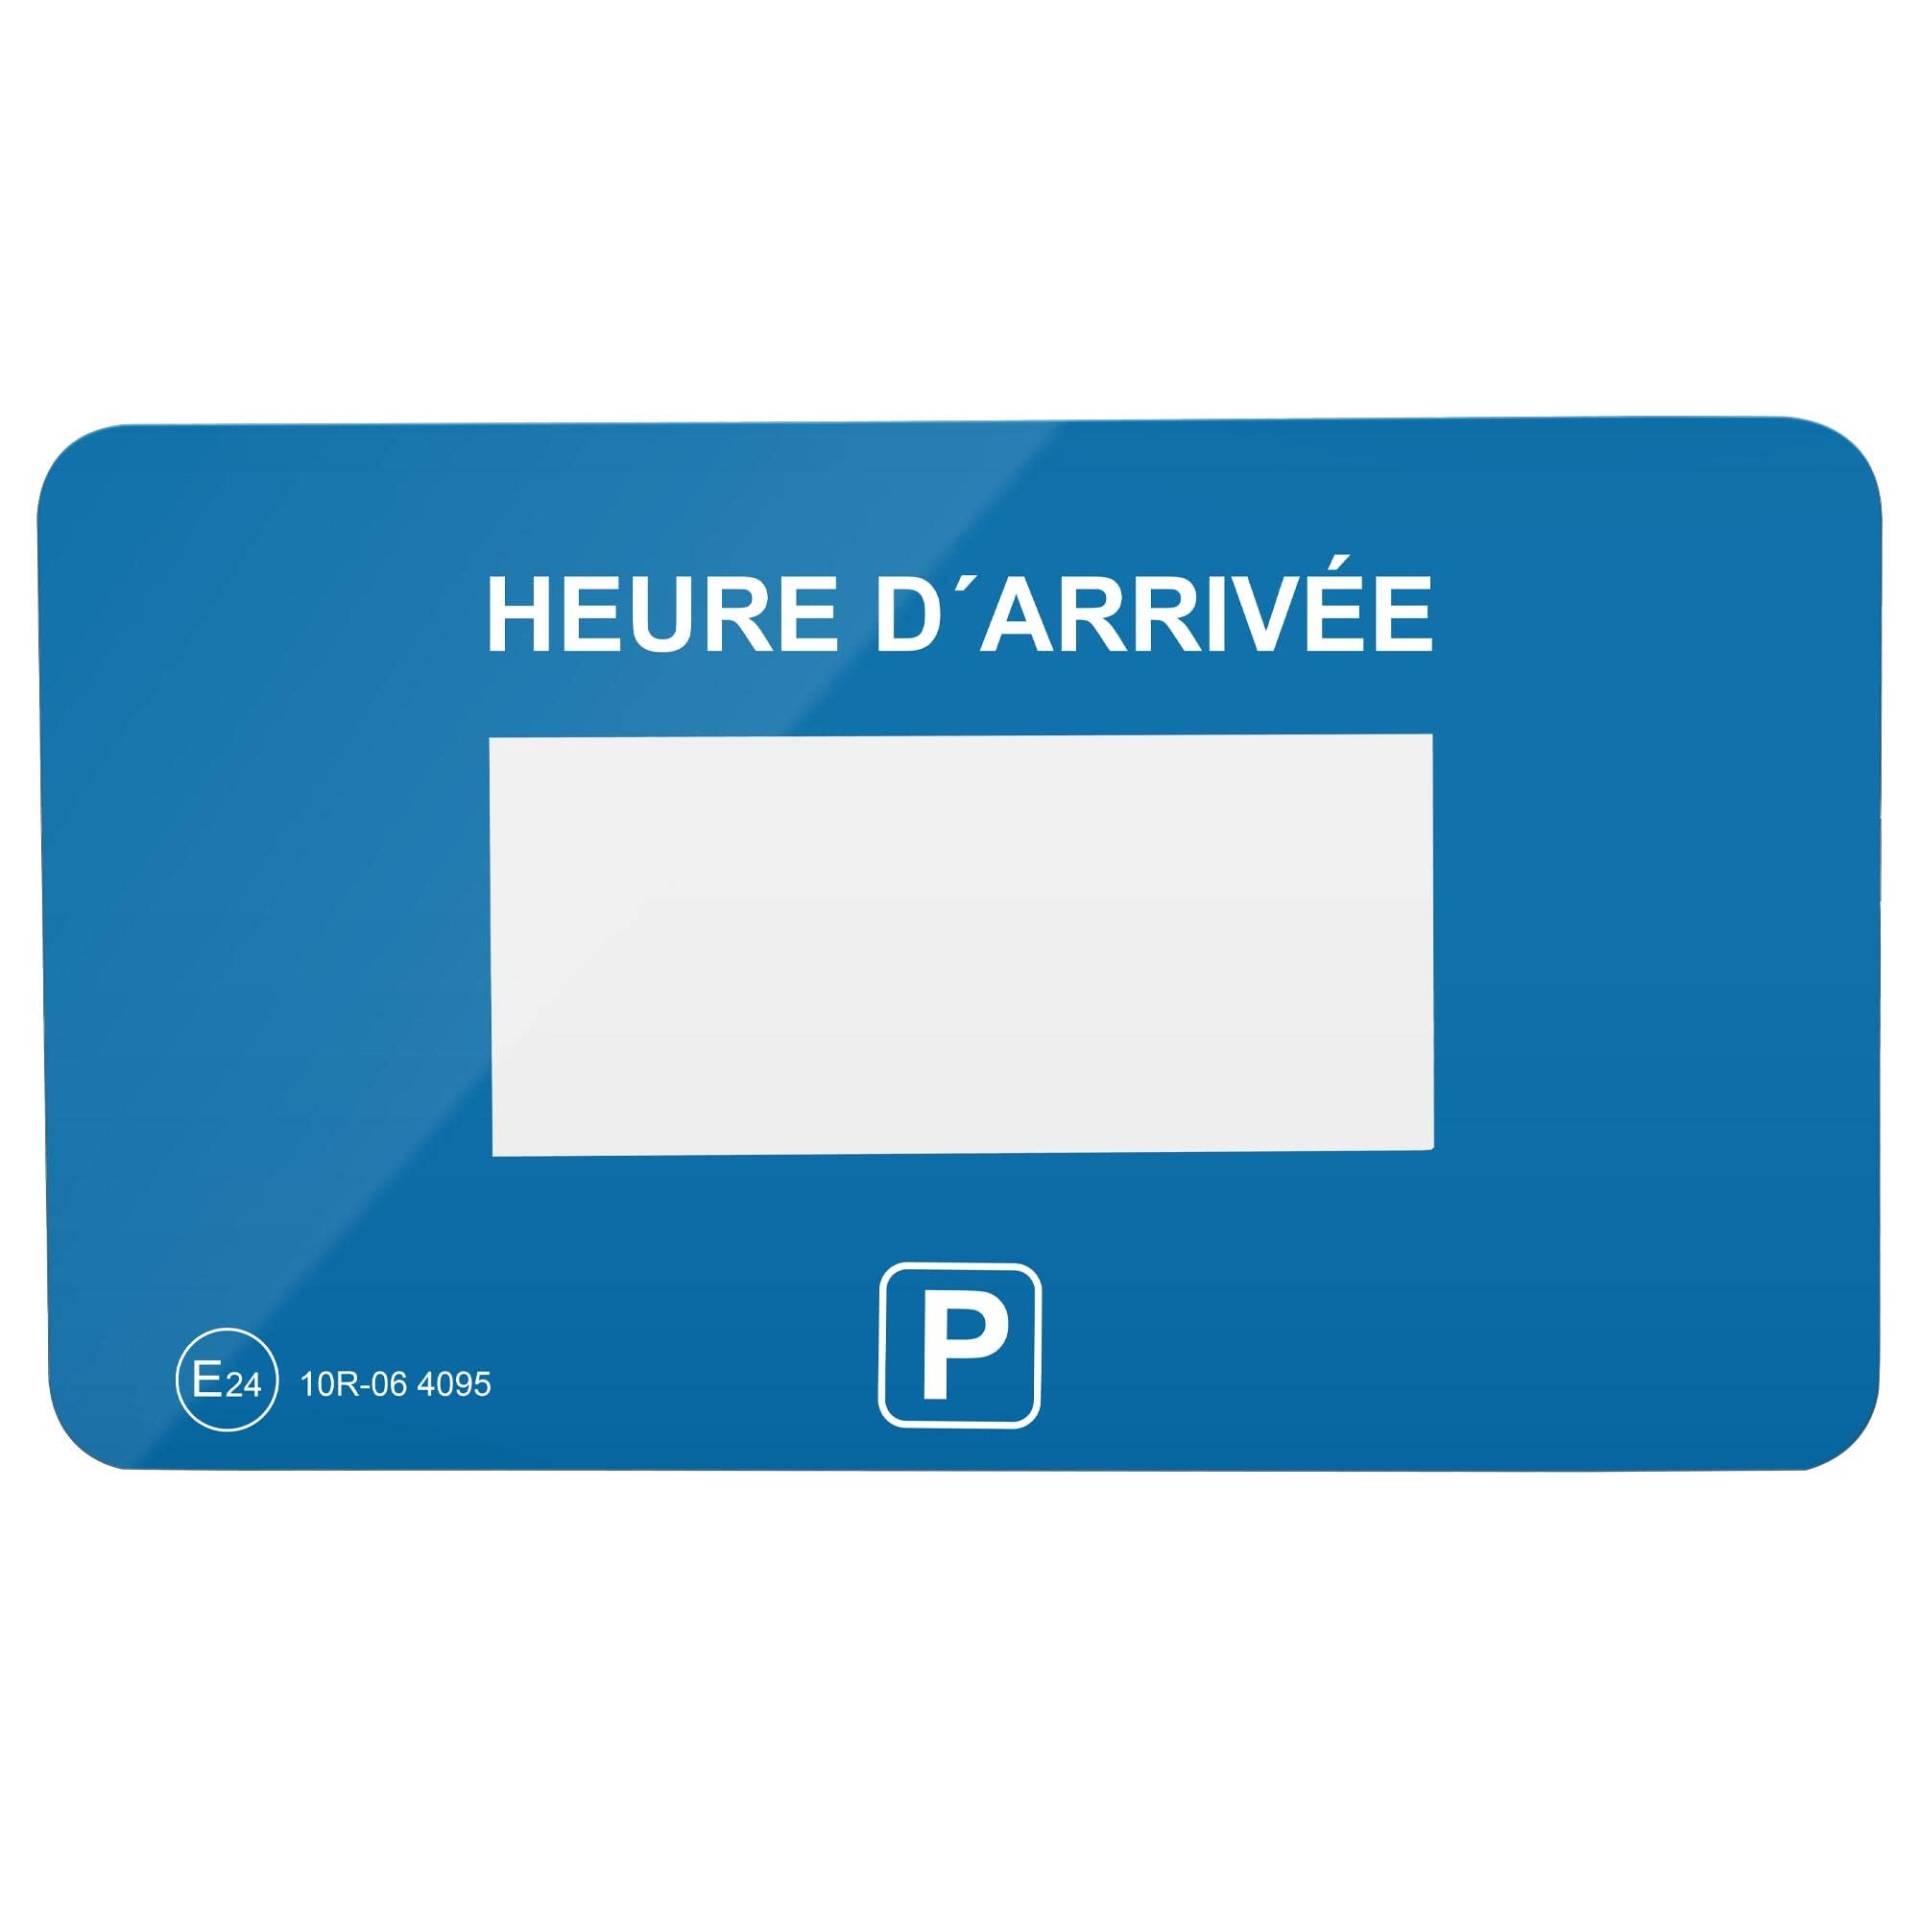 Parkwächter V1 Klebepads mit Parkscheiben-Folie für die elektronische Parkscheibe, 2 Stück, französisch, blau von Parkwächter